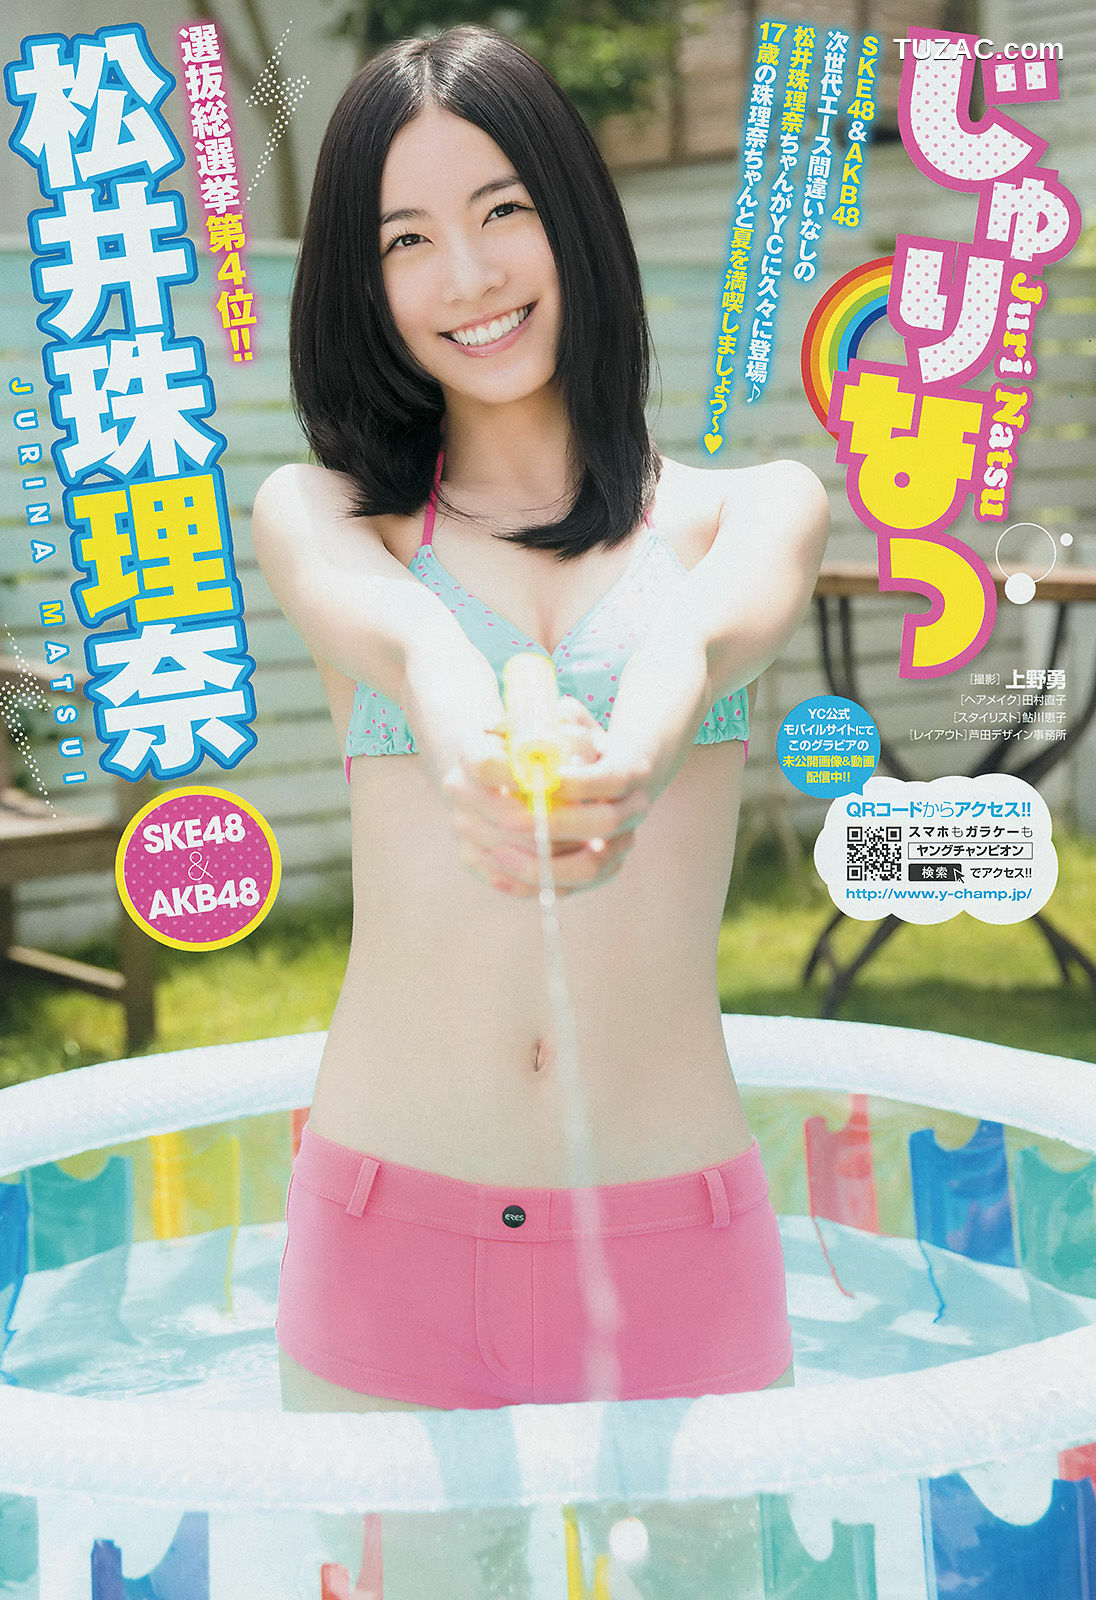 Young Champion杂志写真_ 松井珠理奈 虎南有香 2014年No.16 写真杂志[15P]